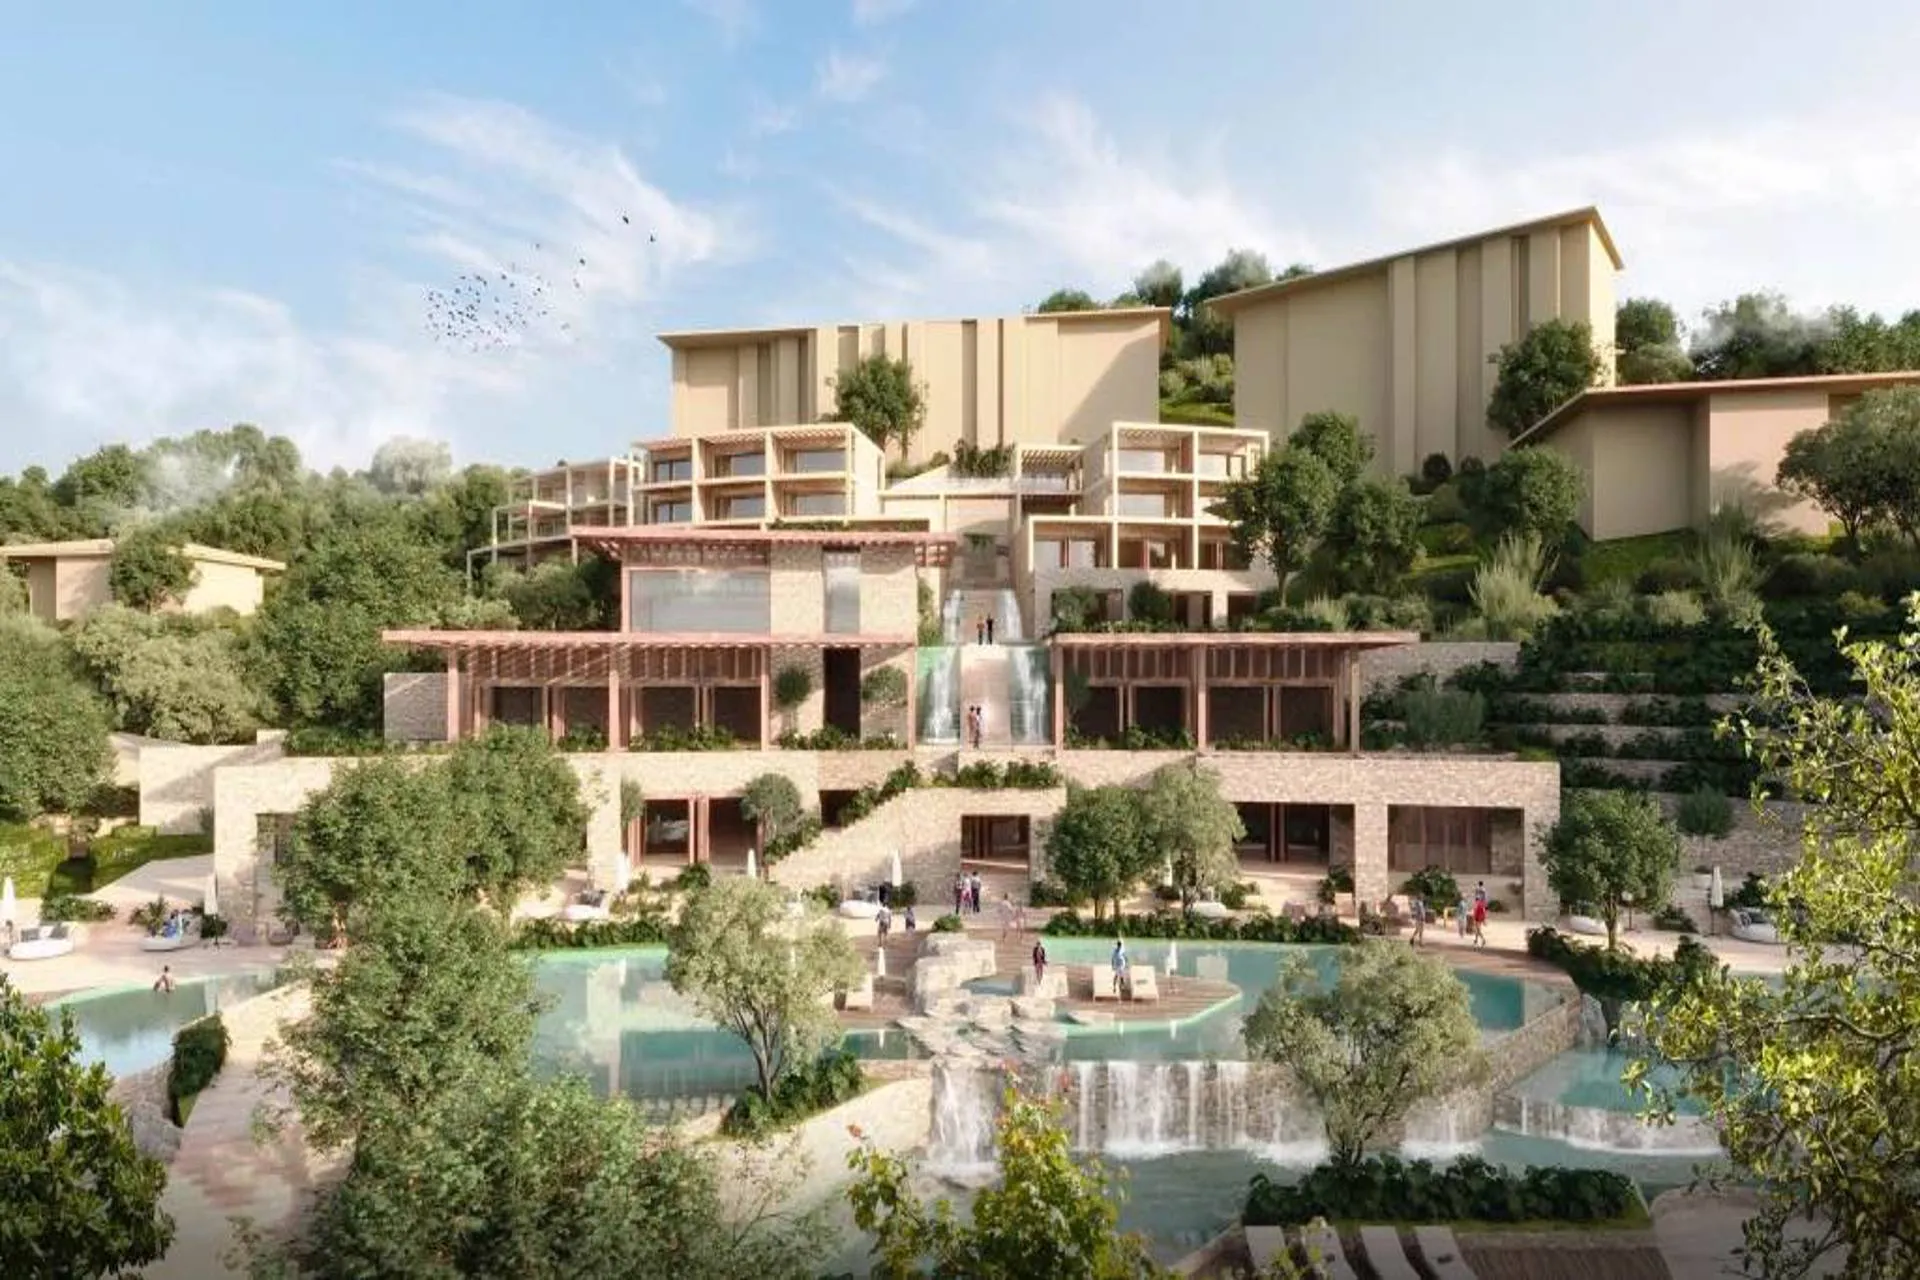 Hilton llevará la primera propiedad Waldorf Astoria a Costa Rica